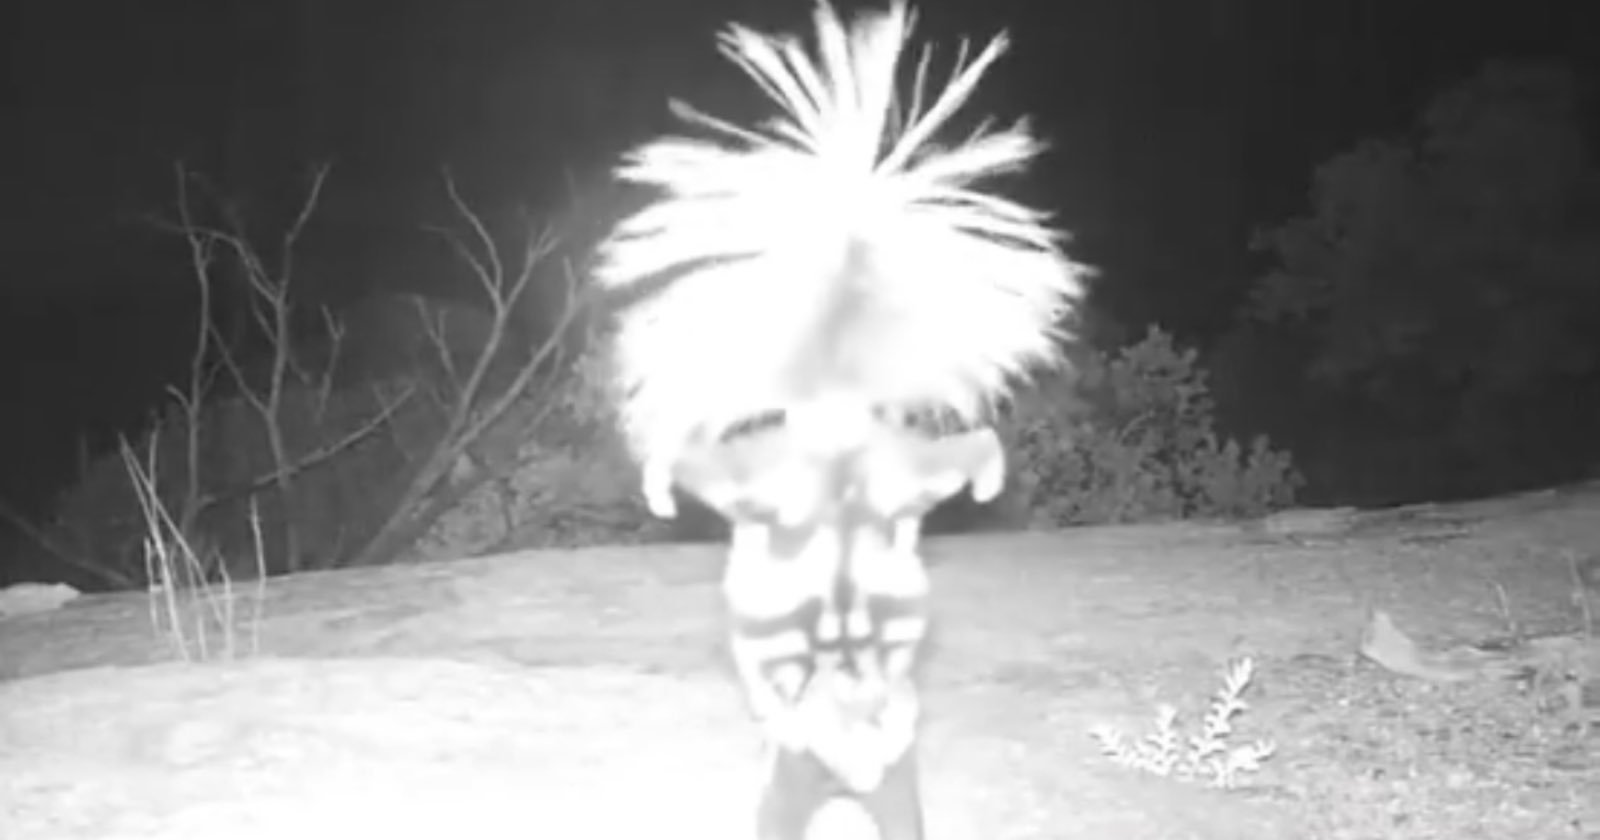  national park service trail camera captures skunk doing 